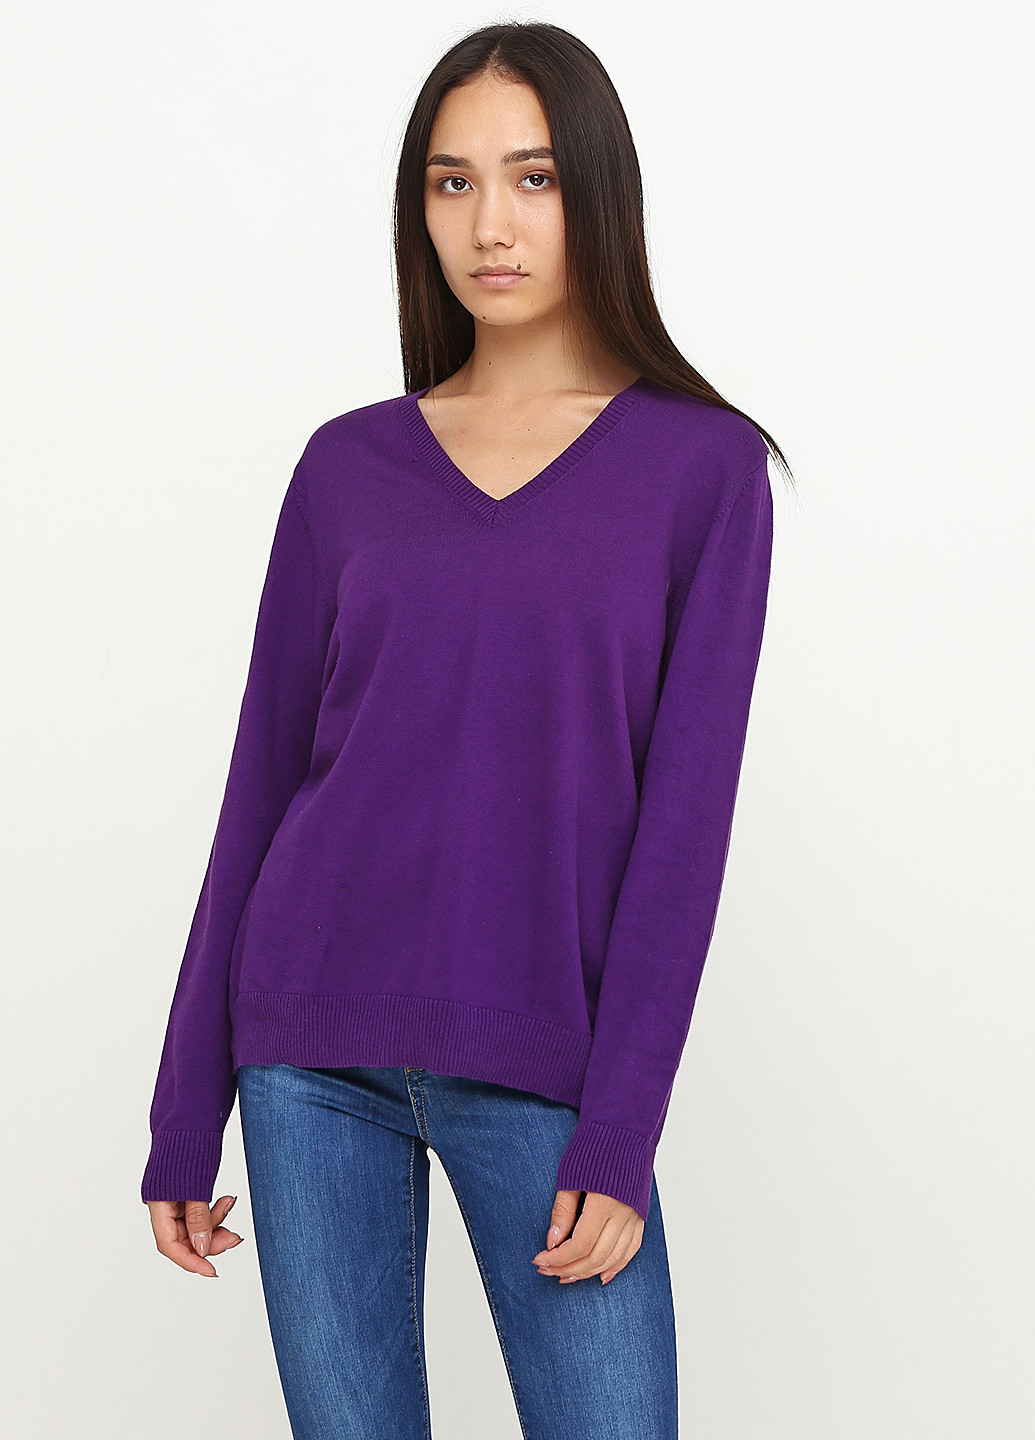 Темно-фиолетовый демисезонный пуловер пуловер Lands' End